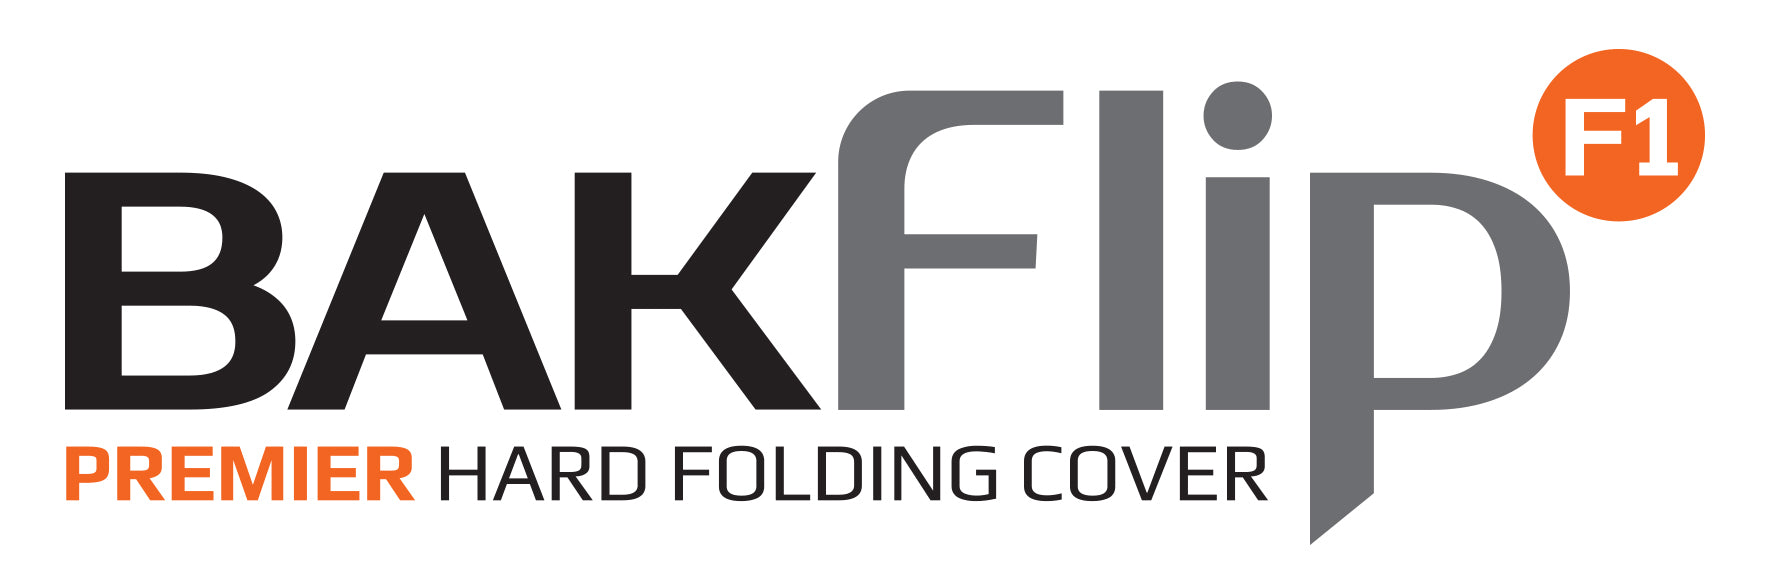 BAK BAKFlip F1 Hard Folding Truck Bed Cover - 1999-2007 Ford F-250/350/450 8' Bed Model 772304